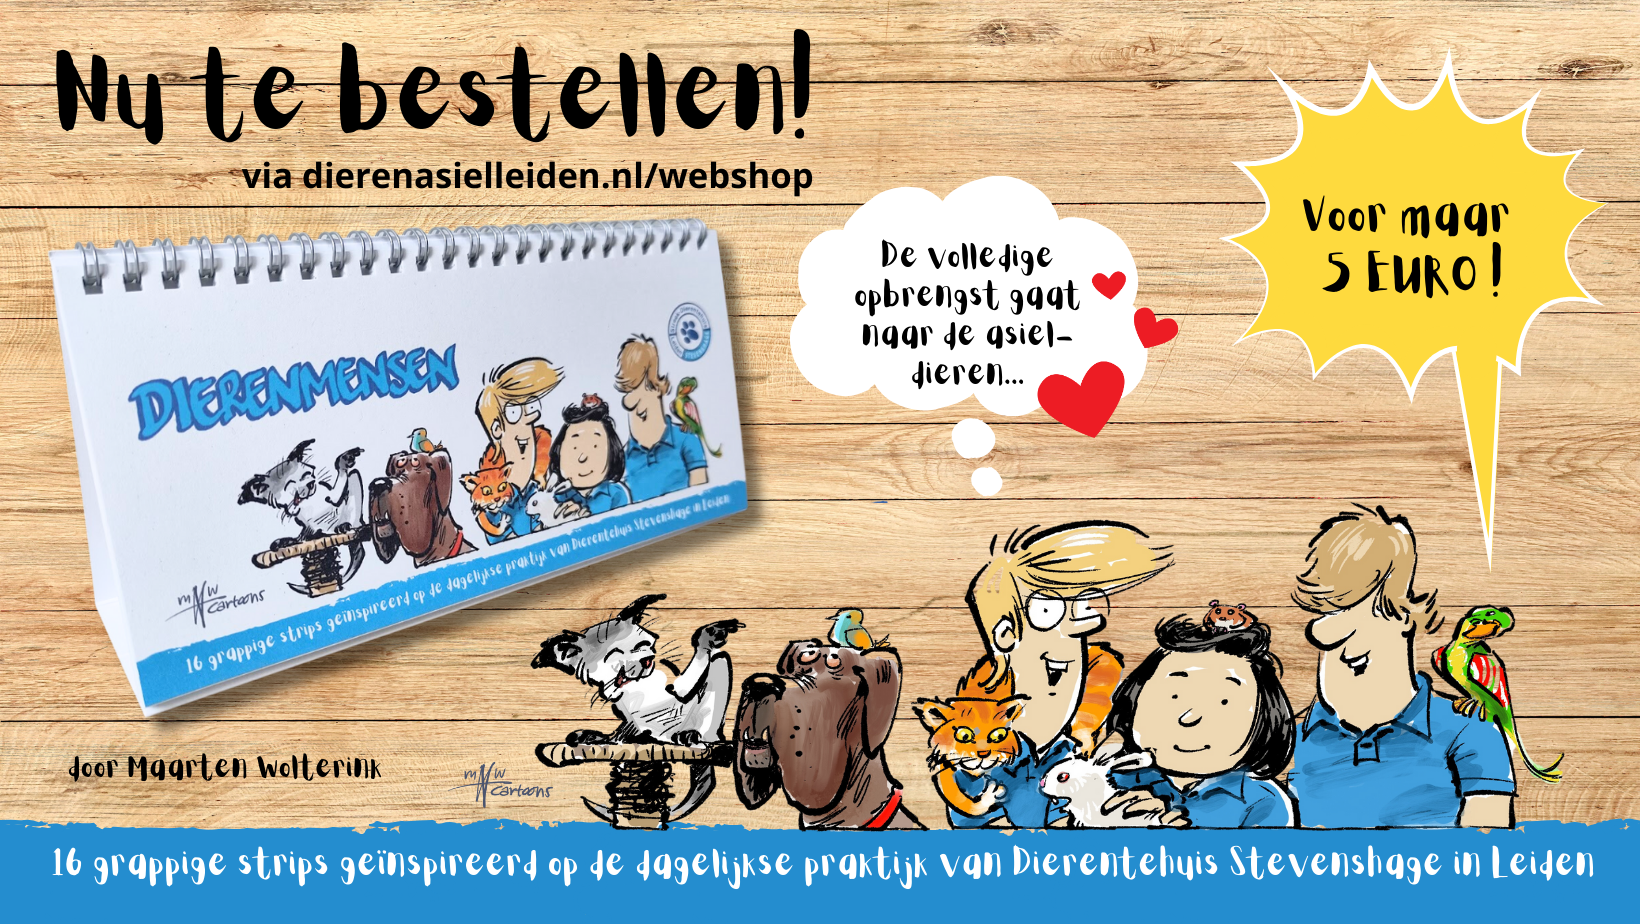 Bestel nu uw exemplaar van het stripboek Dierenmensen van Dierentehuis Stevenshage in Leiden!